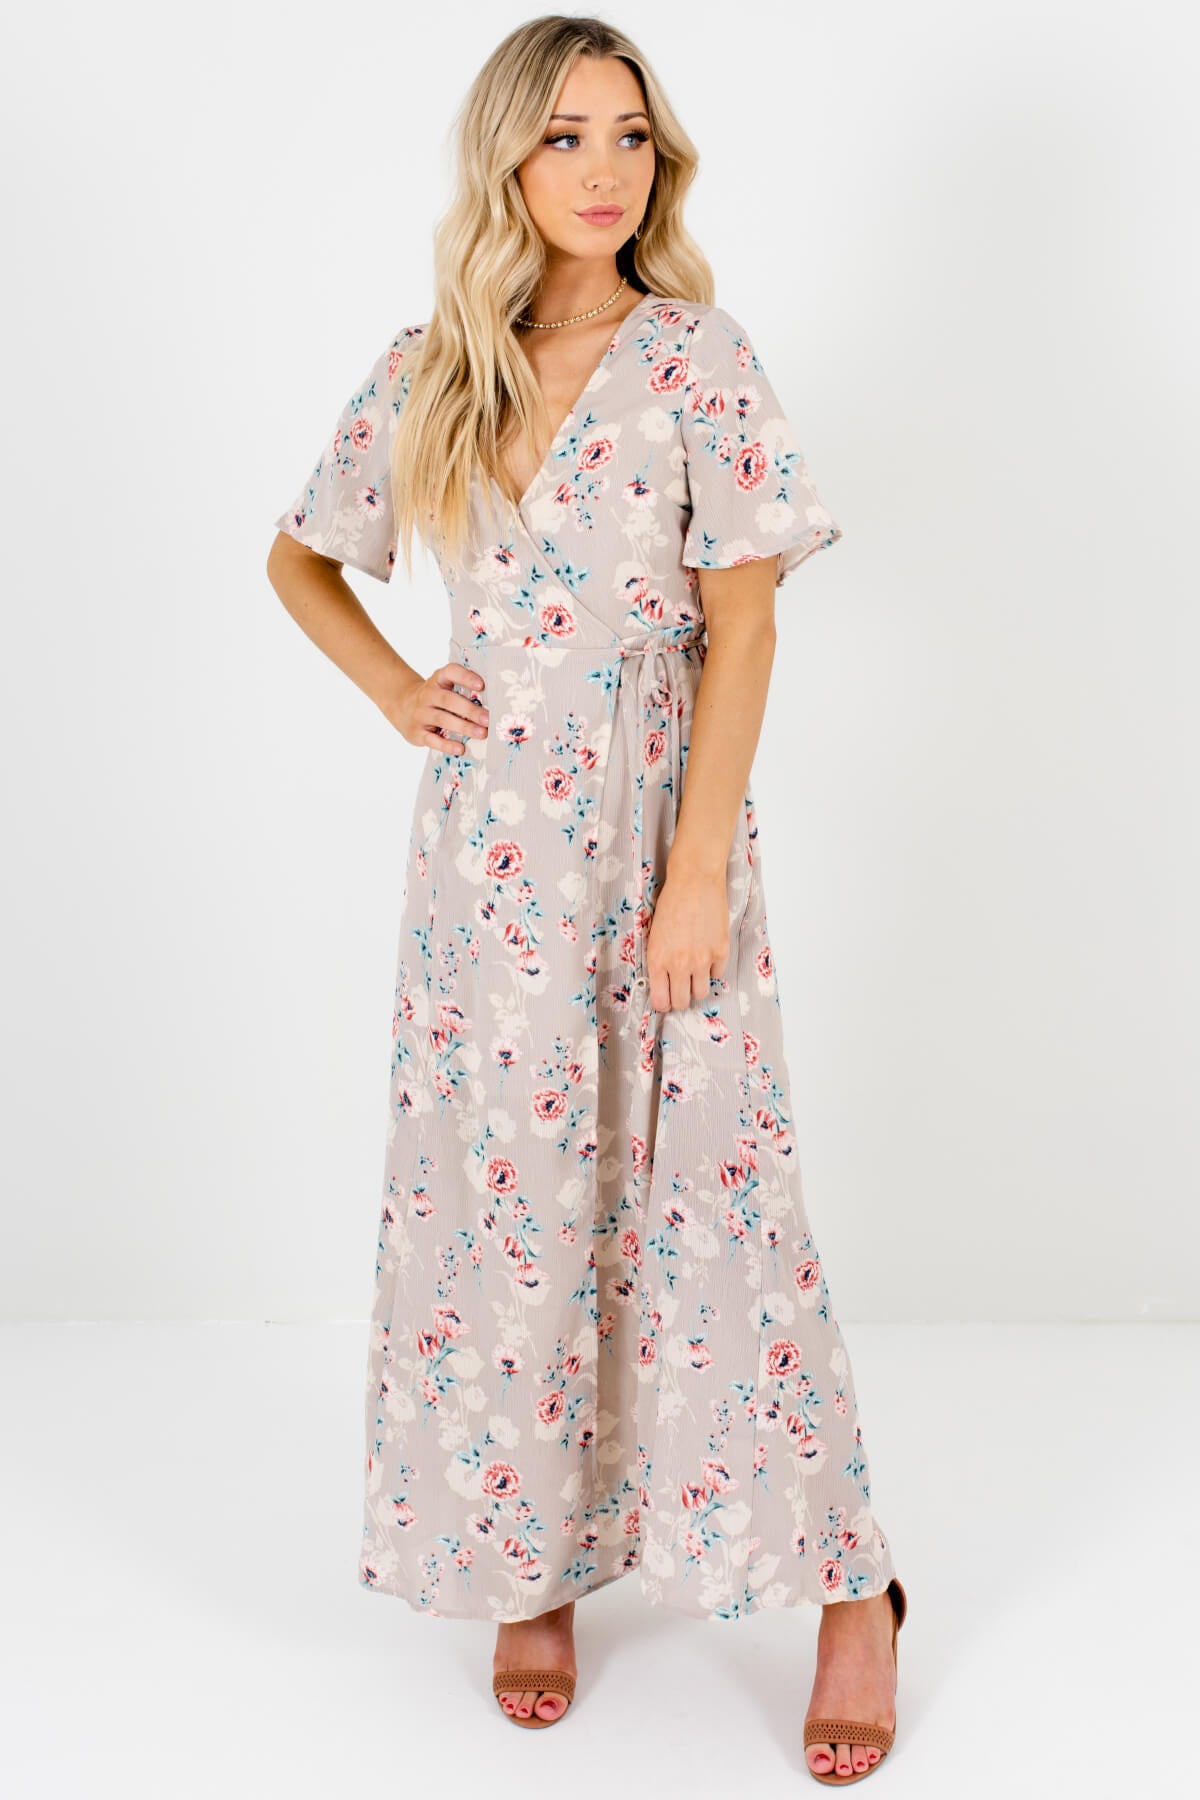 Gray Floral Print Long Maxi Wrap Dresses Affordable Online Boutique